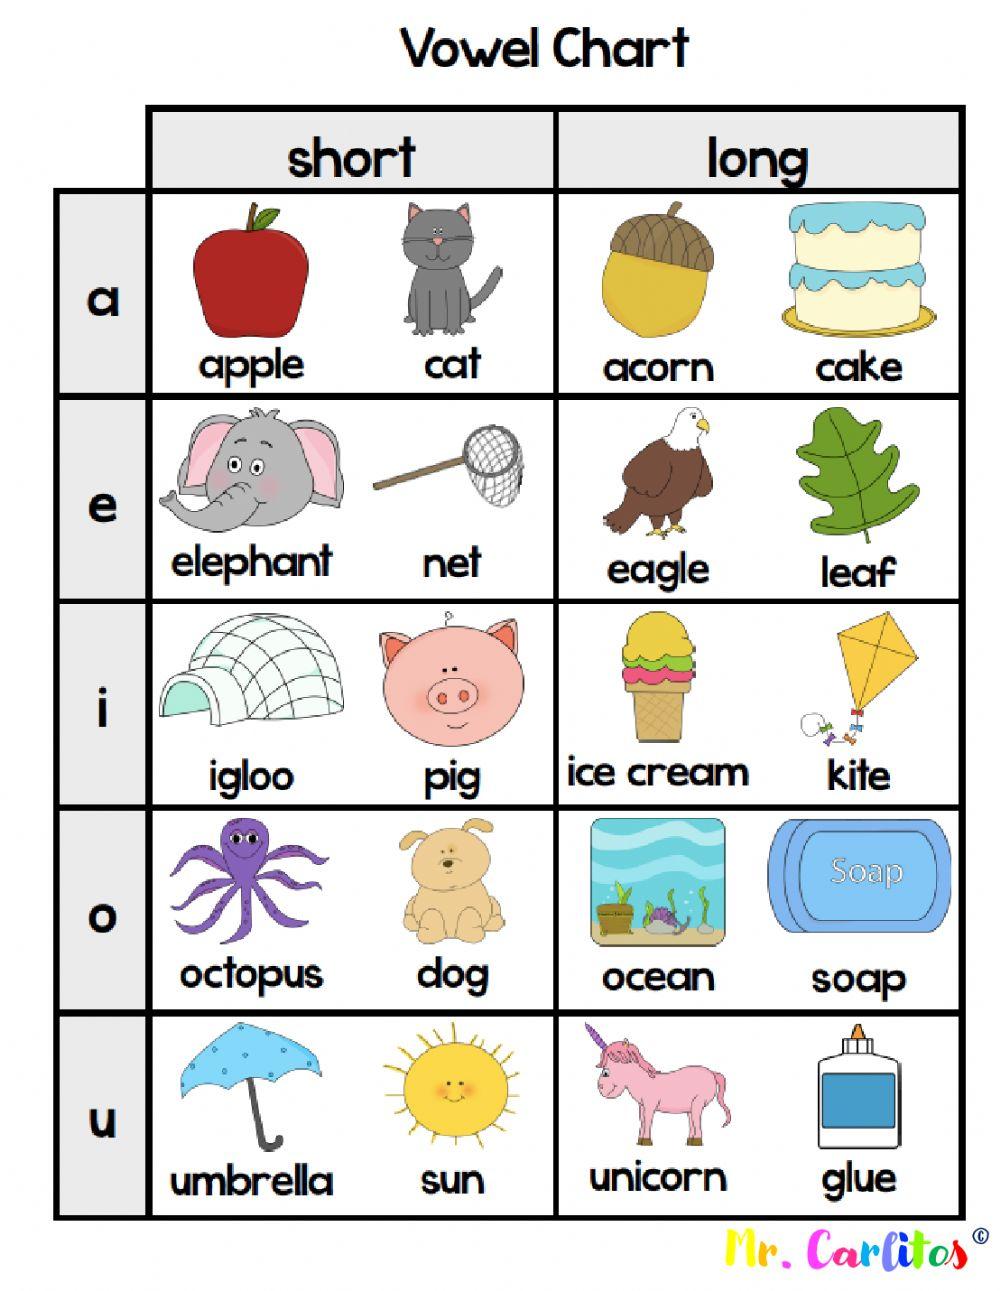 Long & short vowels Chart